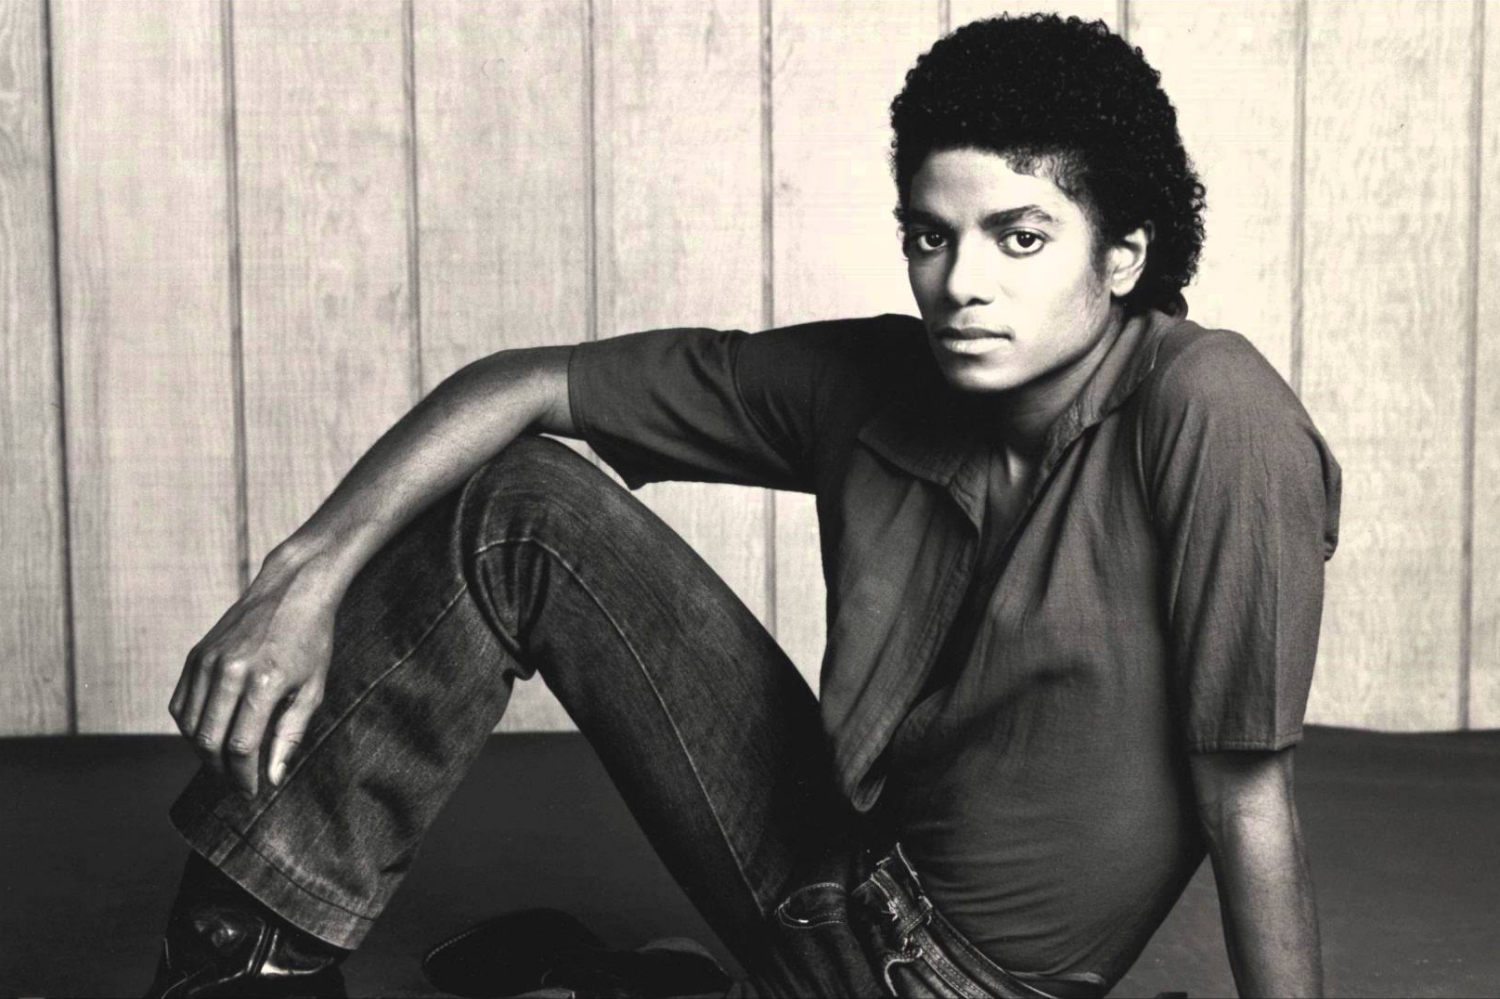 El ‘Off the Wall’ de Michael Jackson sale en versión original, junto a un nuevo documental